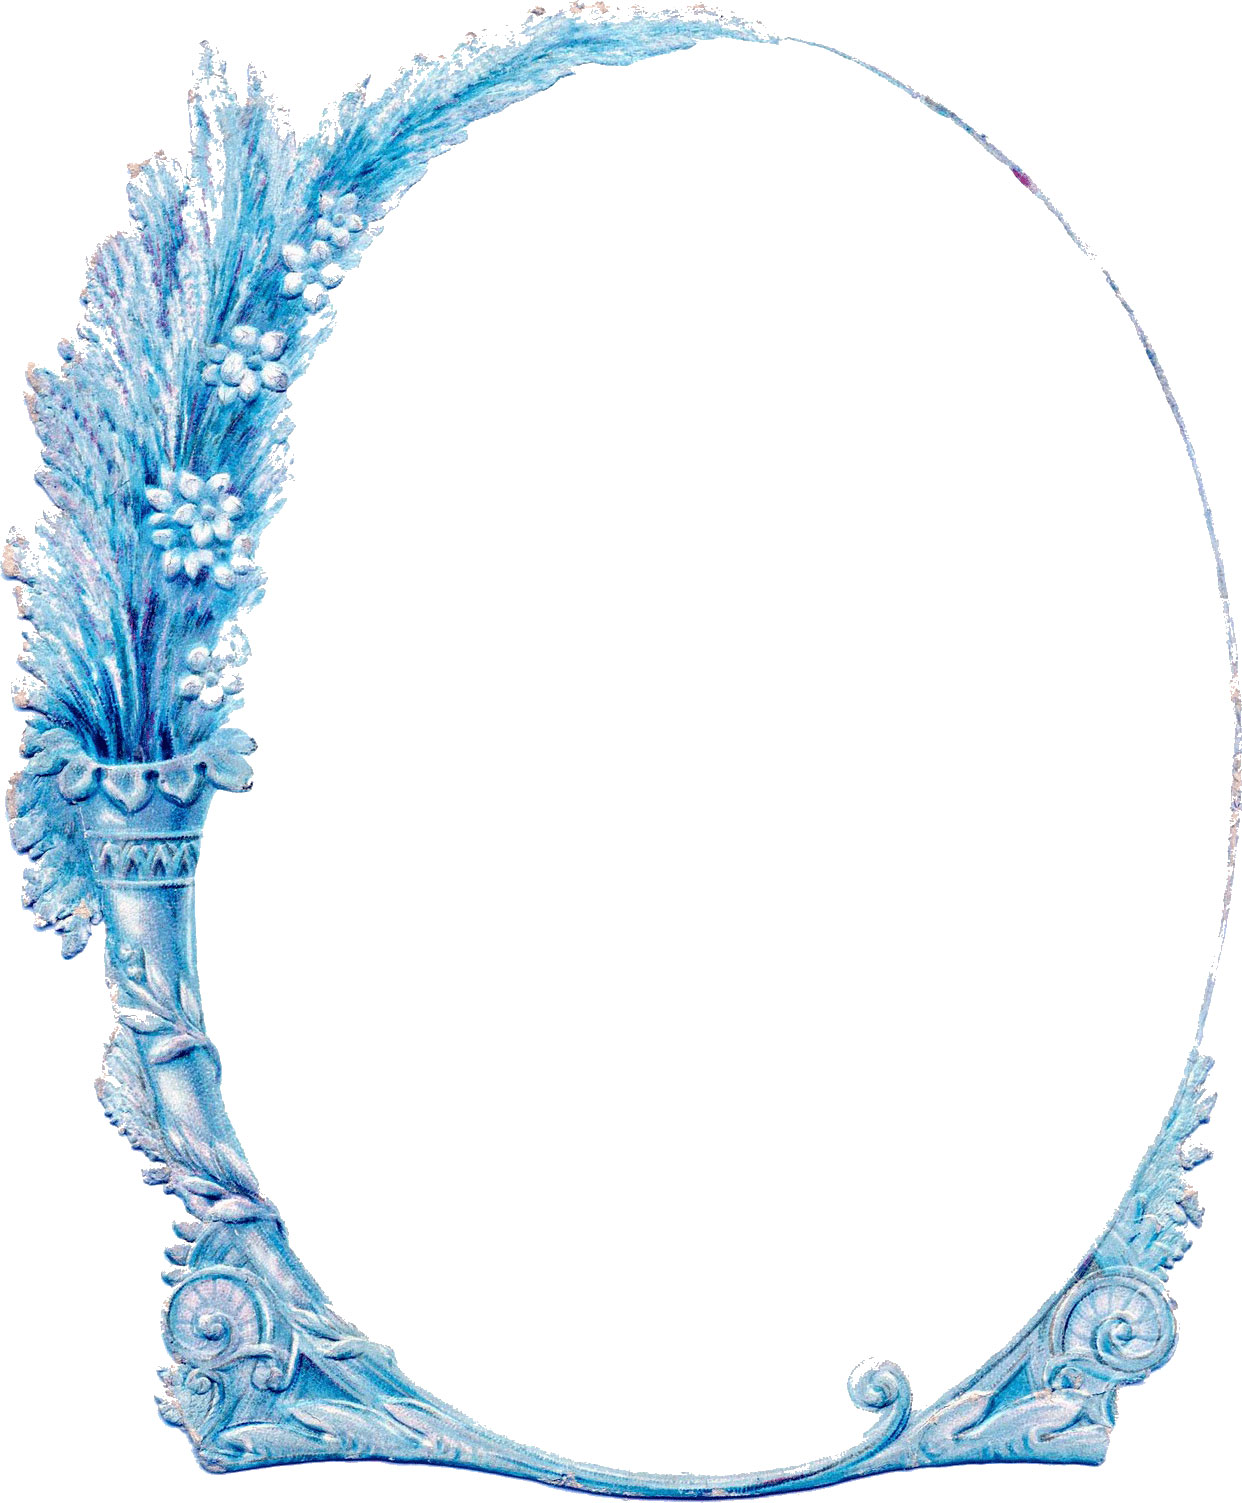 花のフレーム枠イラスト-花瓶・台座・青